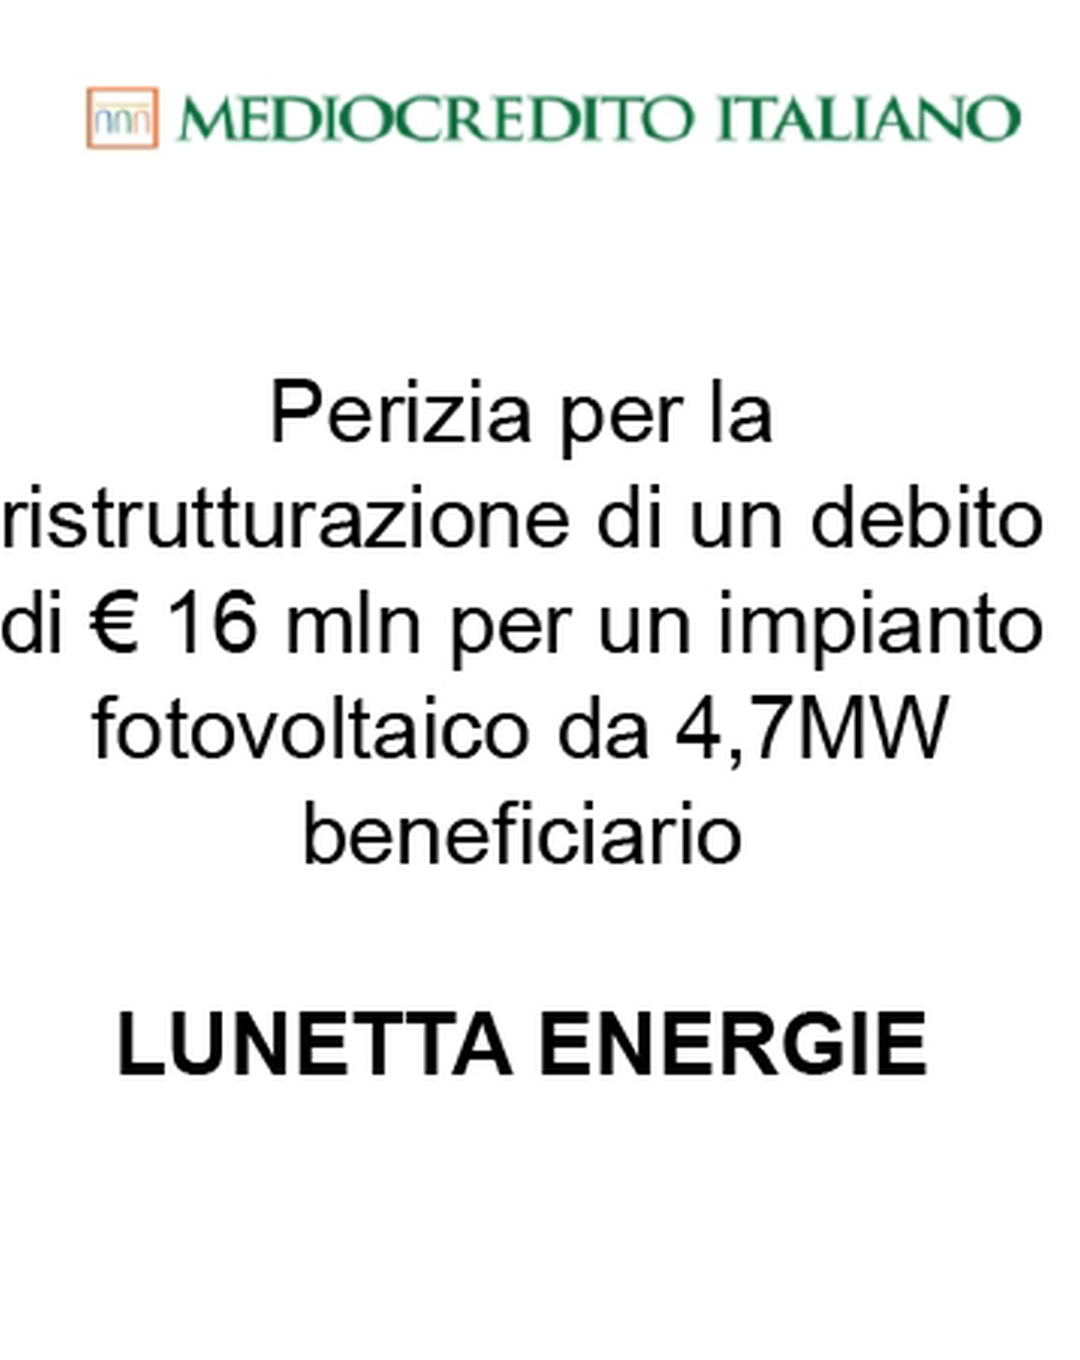 Consulente di Mediocredito Italiano (Gruppo Intesa Sanpaolo) nella ristrutturazione di un finanziamento a debito di € 16 mln per un impianto fotovoltaico da 4,7 MW a favore di Lunetta Energie (beneficiaria). Ha agito in qualità di consulente della Banca. Incarico completato nel 2015.